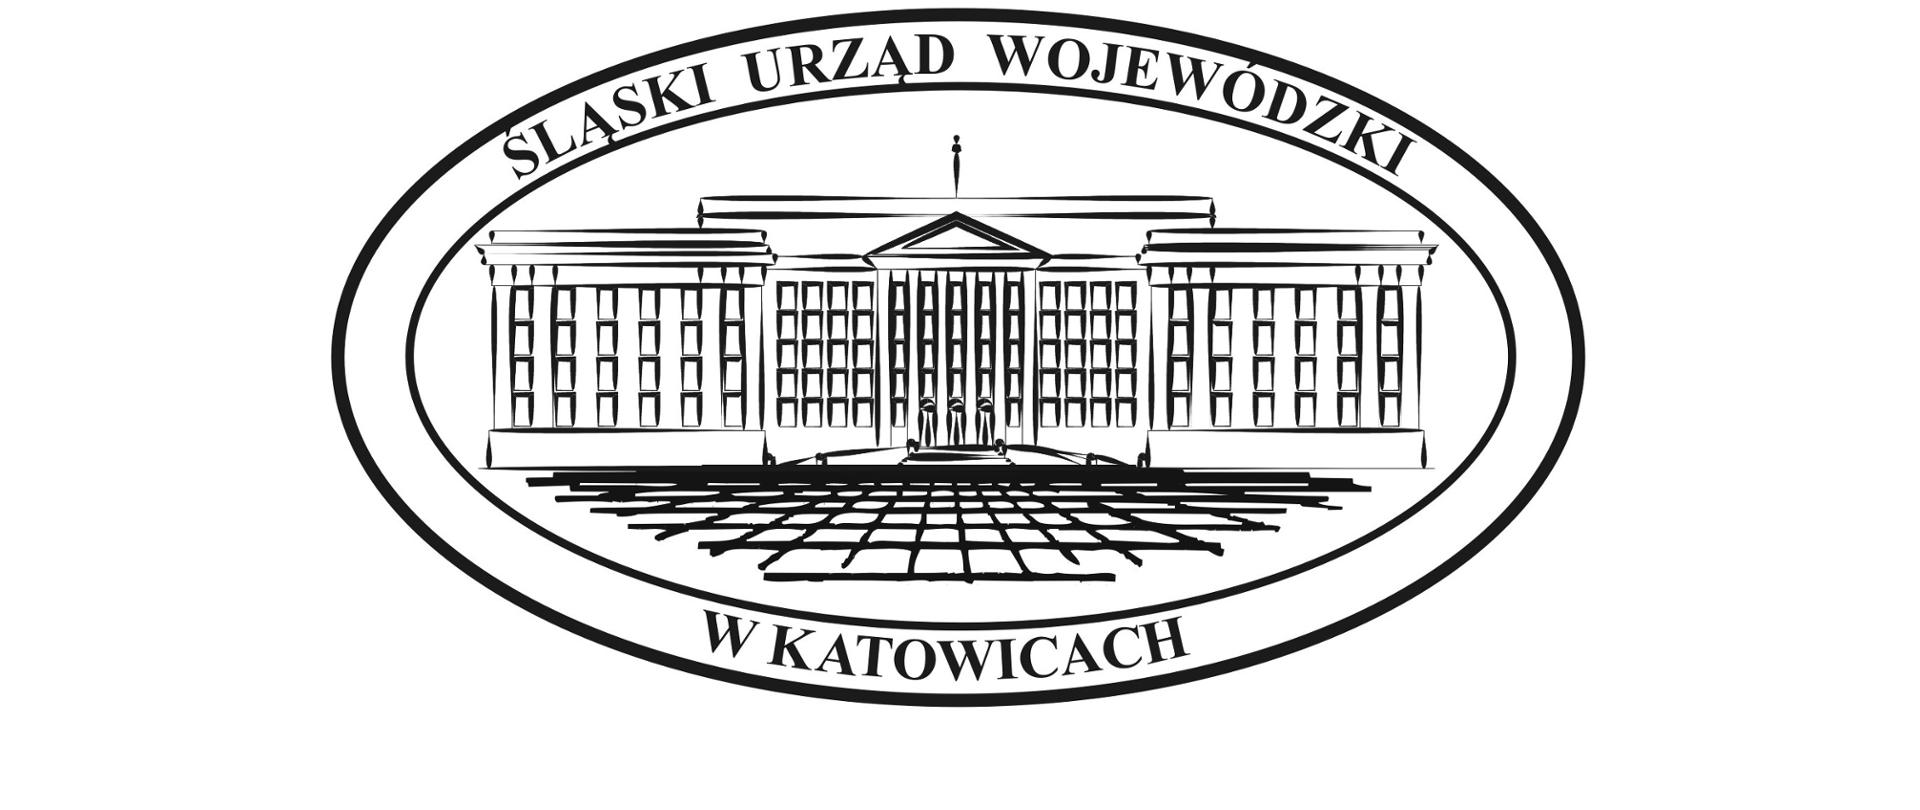 W owalu trzyczęściowy, kilkupiętrowy gmach. Na obwodzie napis: Śląski Urząd Wojewódzki w Katowicach